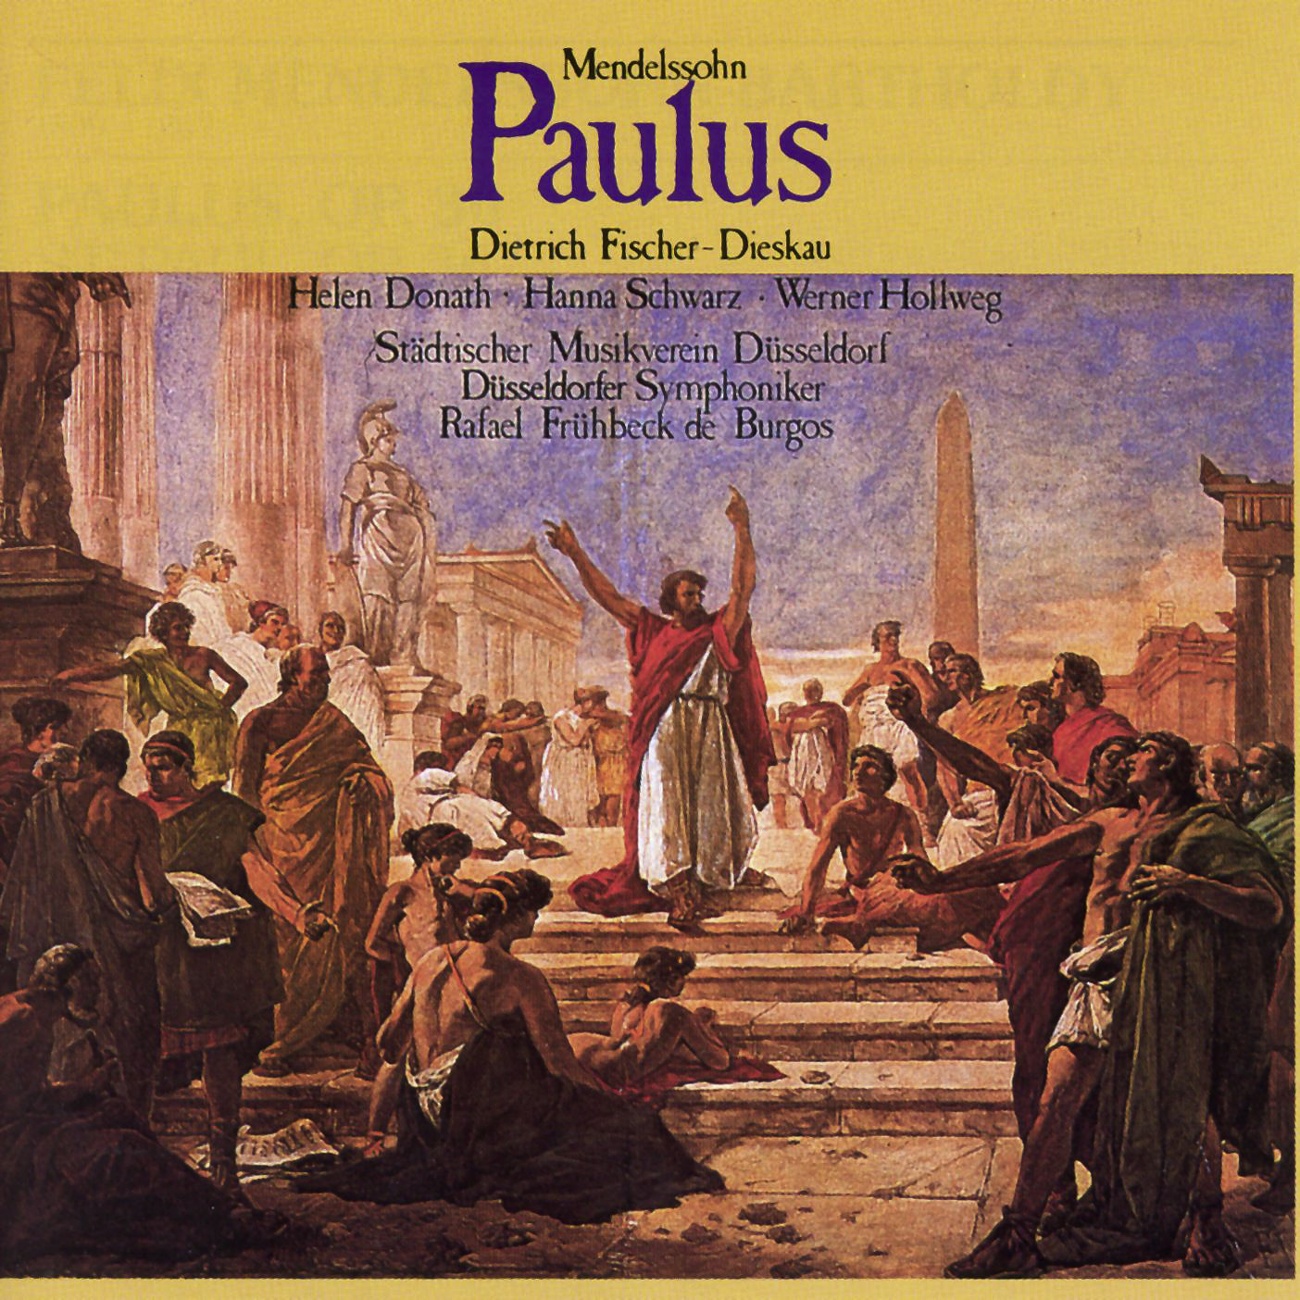 Paulus op. 36  Oratorium in 2 Teilen 1987 Digital Remaster, Erster Teil: Nr. 3  Allein Gott in der H h sei Ehr Choral: Chor